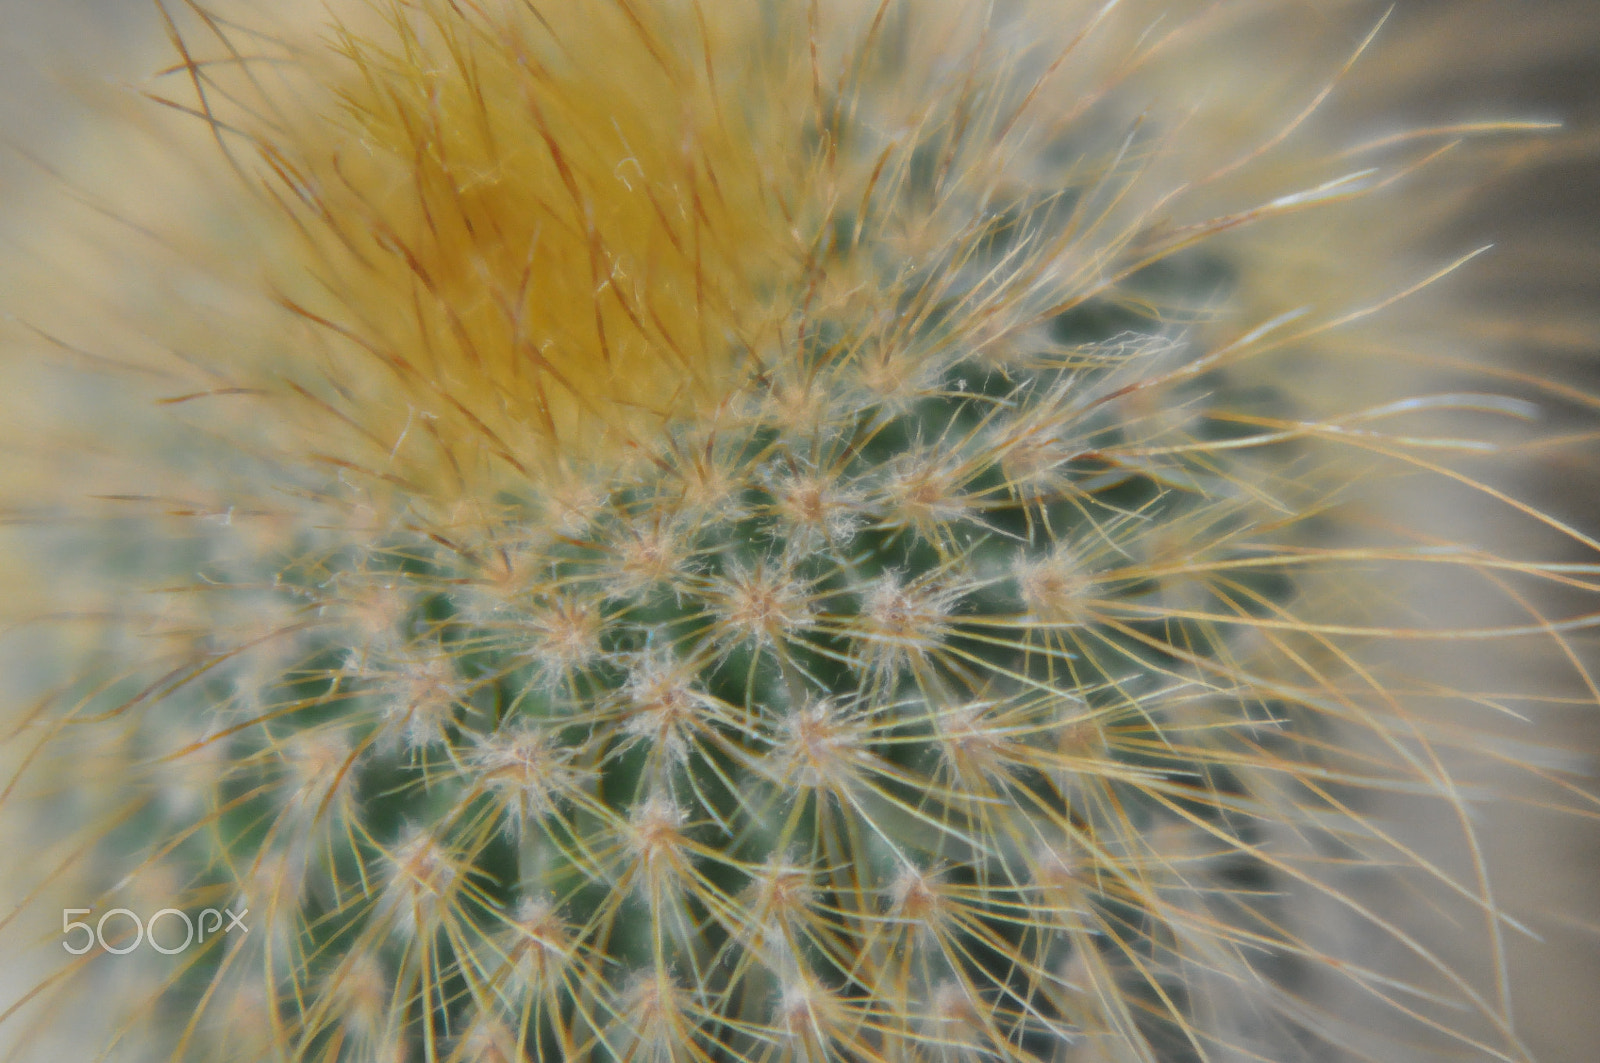 AF Zoom-Nikkor 80-200mm f/4.5-5.6D sample photo. Cactus photography